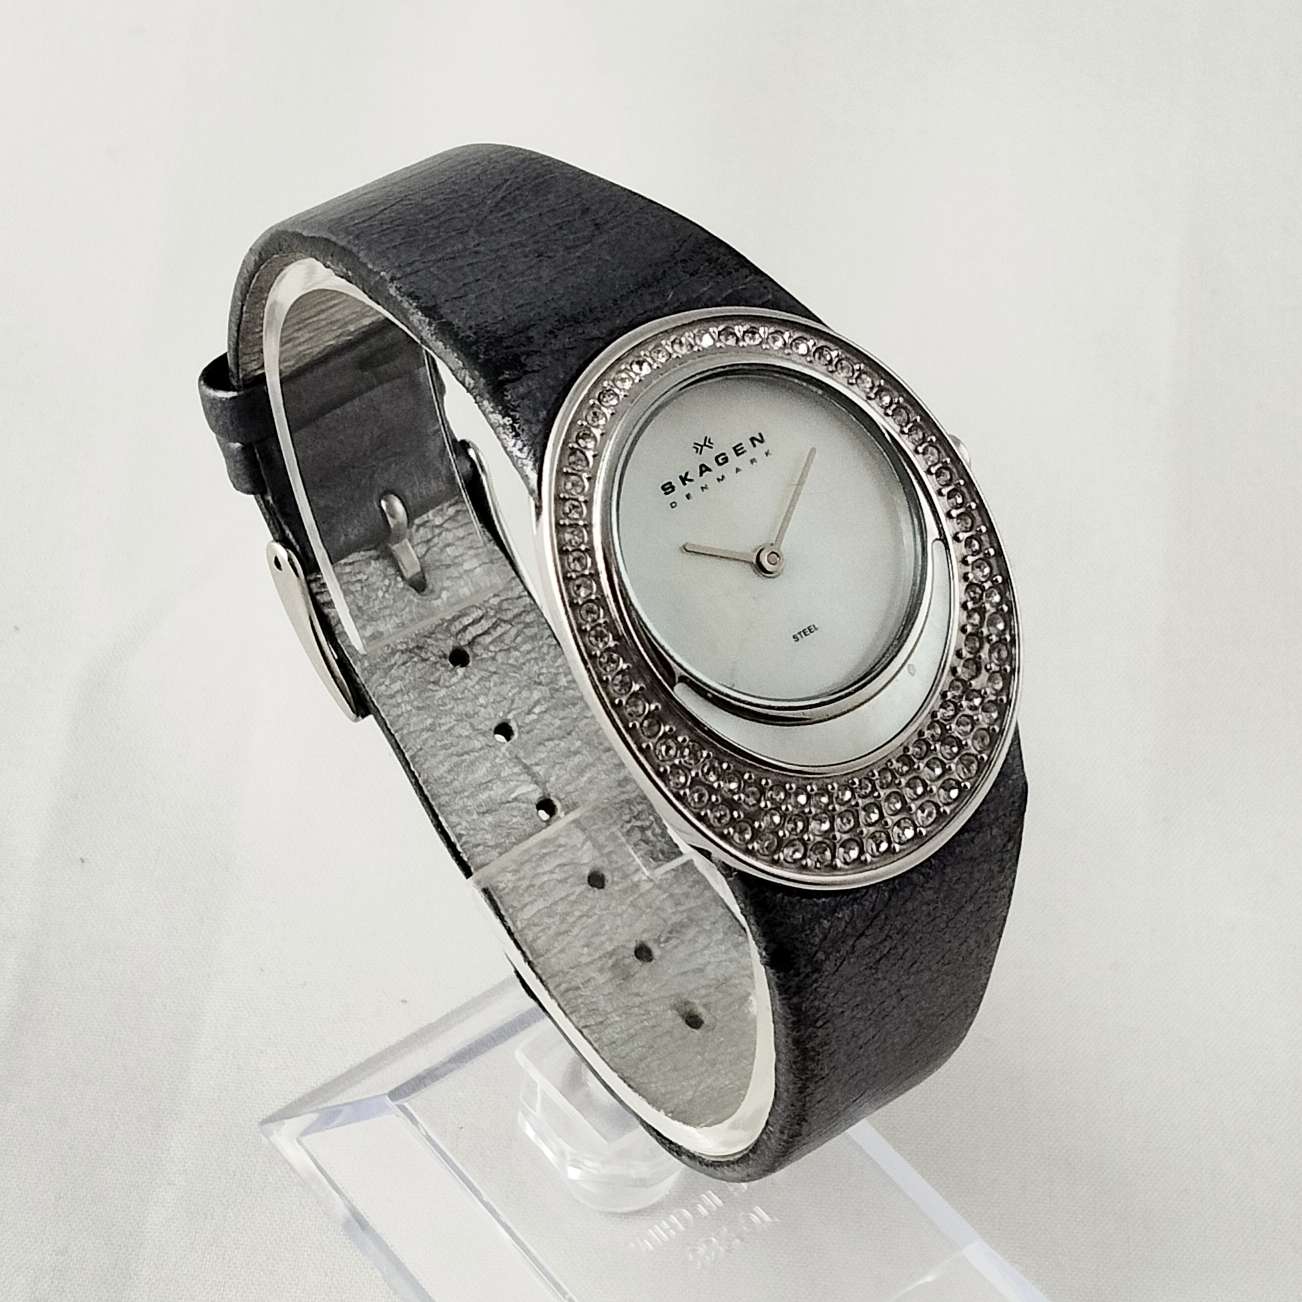 Skagen Women's Watch, Unique Face Design, Dark Gray Leather Strap